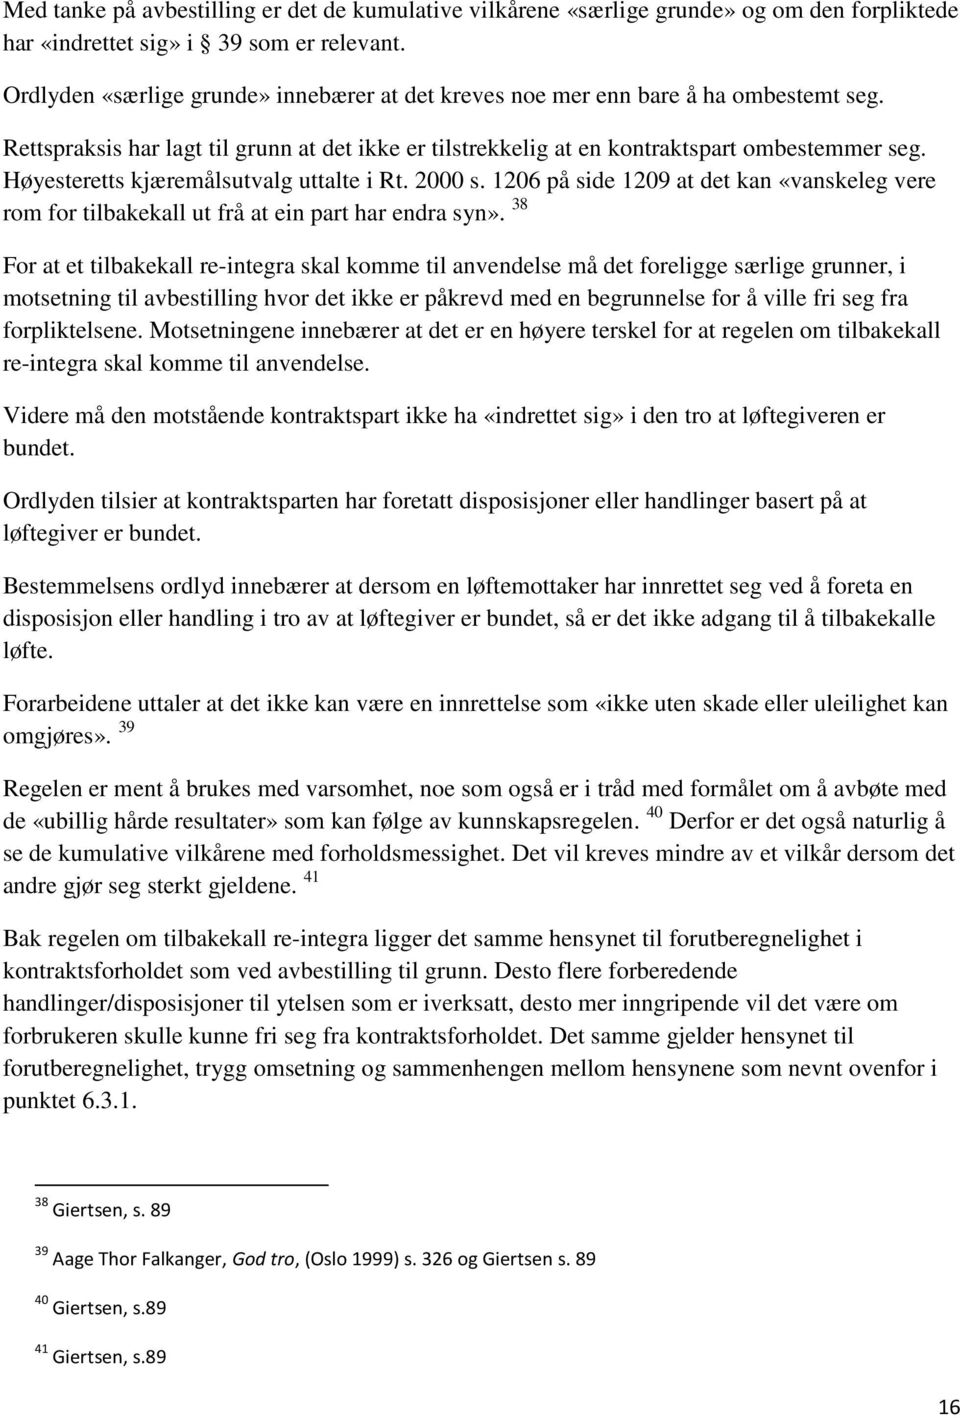 Høyesteretts kjæremålsutvalg uttalte i Rt. 2000 s. 1206 på side 1209 at det kan «vanskeleg vere rom for tilbakekall ut frå at ein part har endra syn».